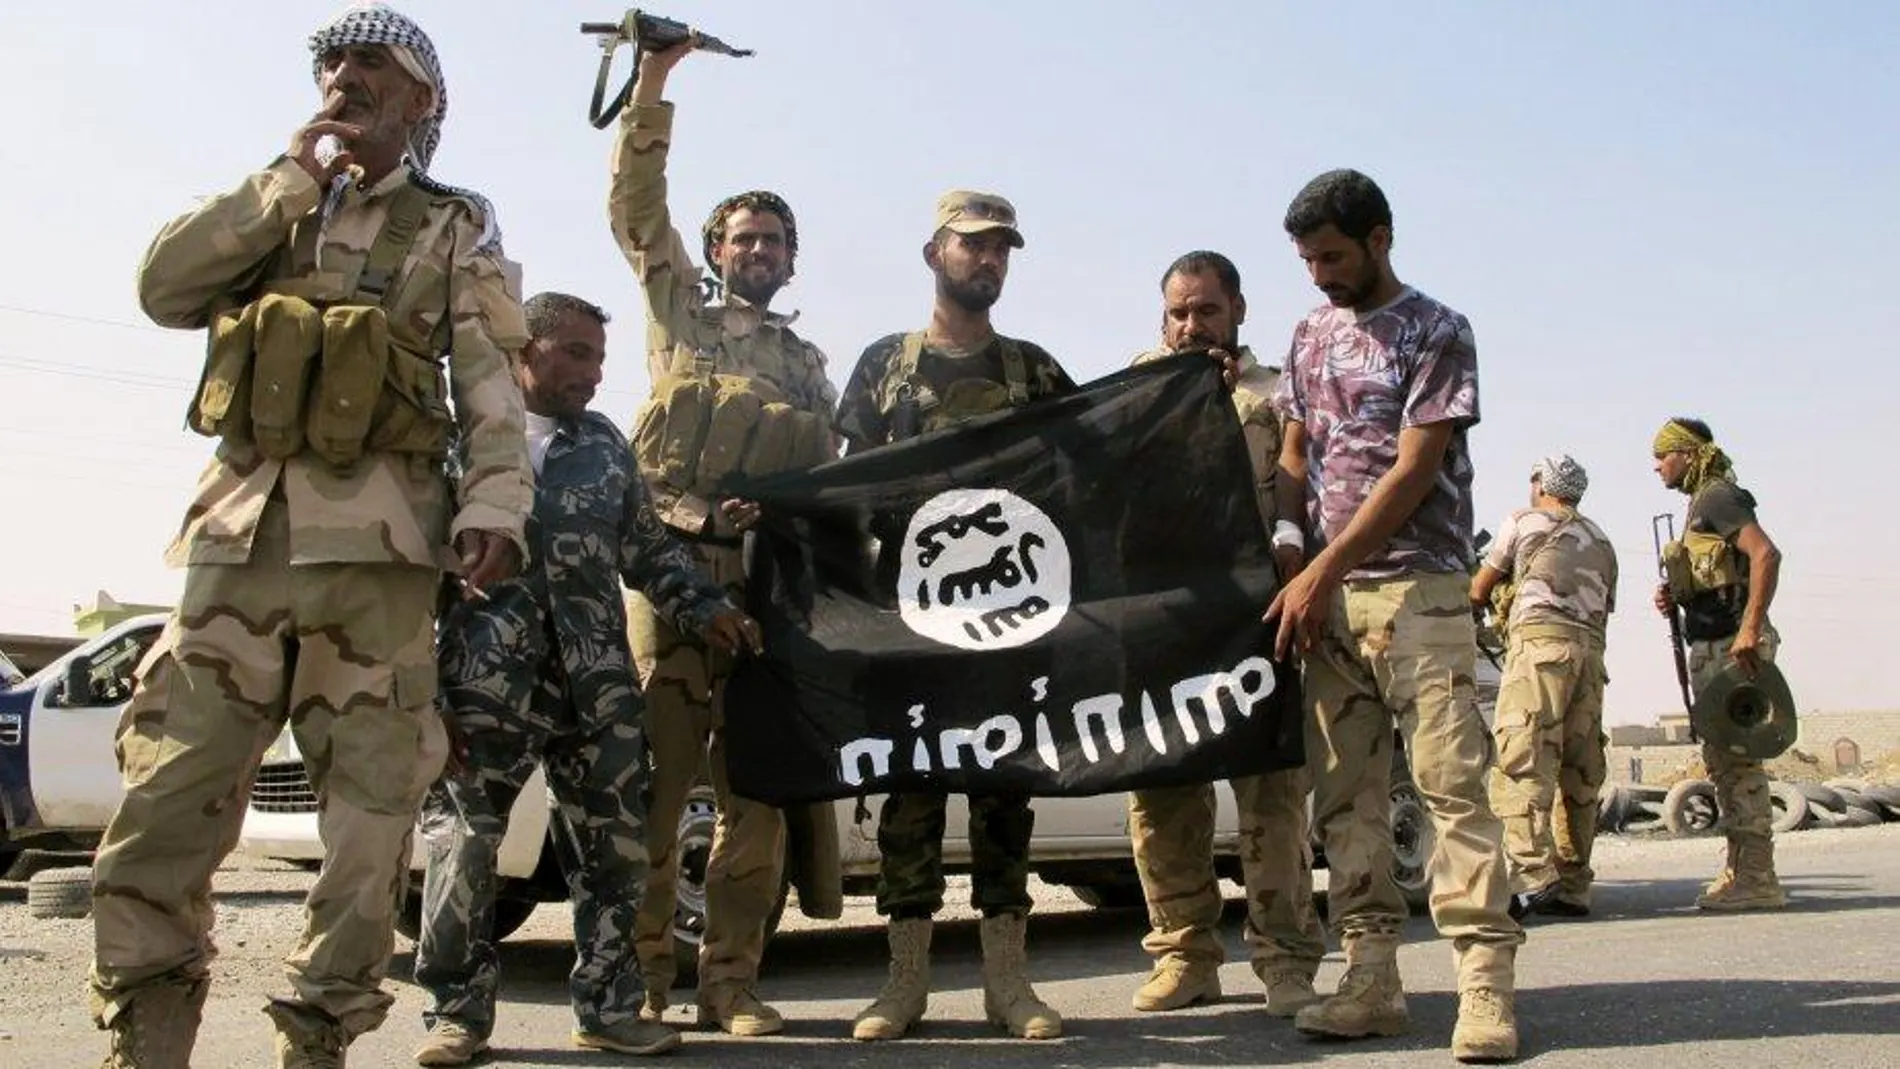 Unos soldados de Daesh exhiben su bandera